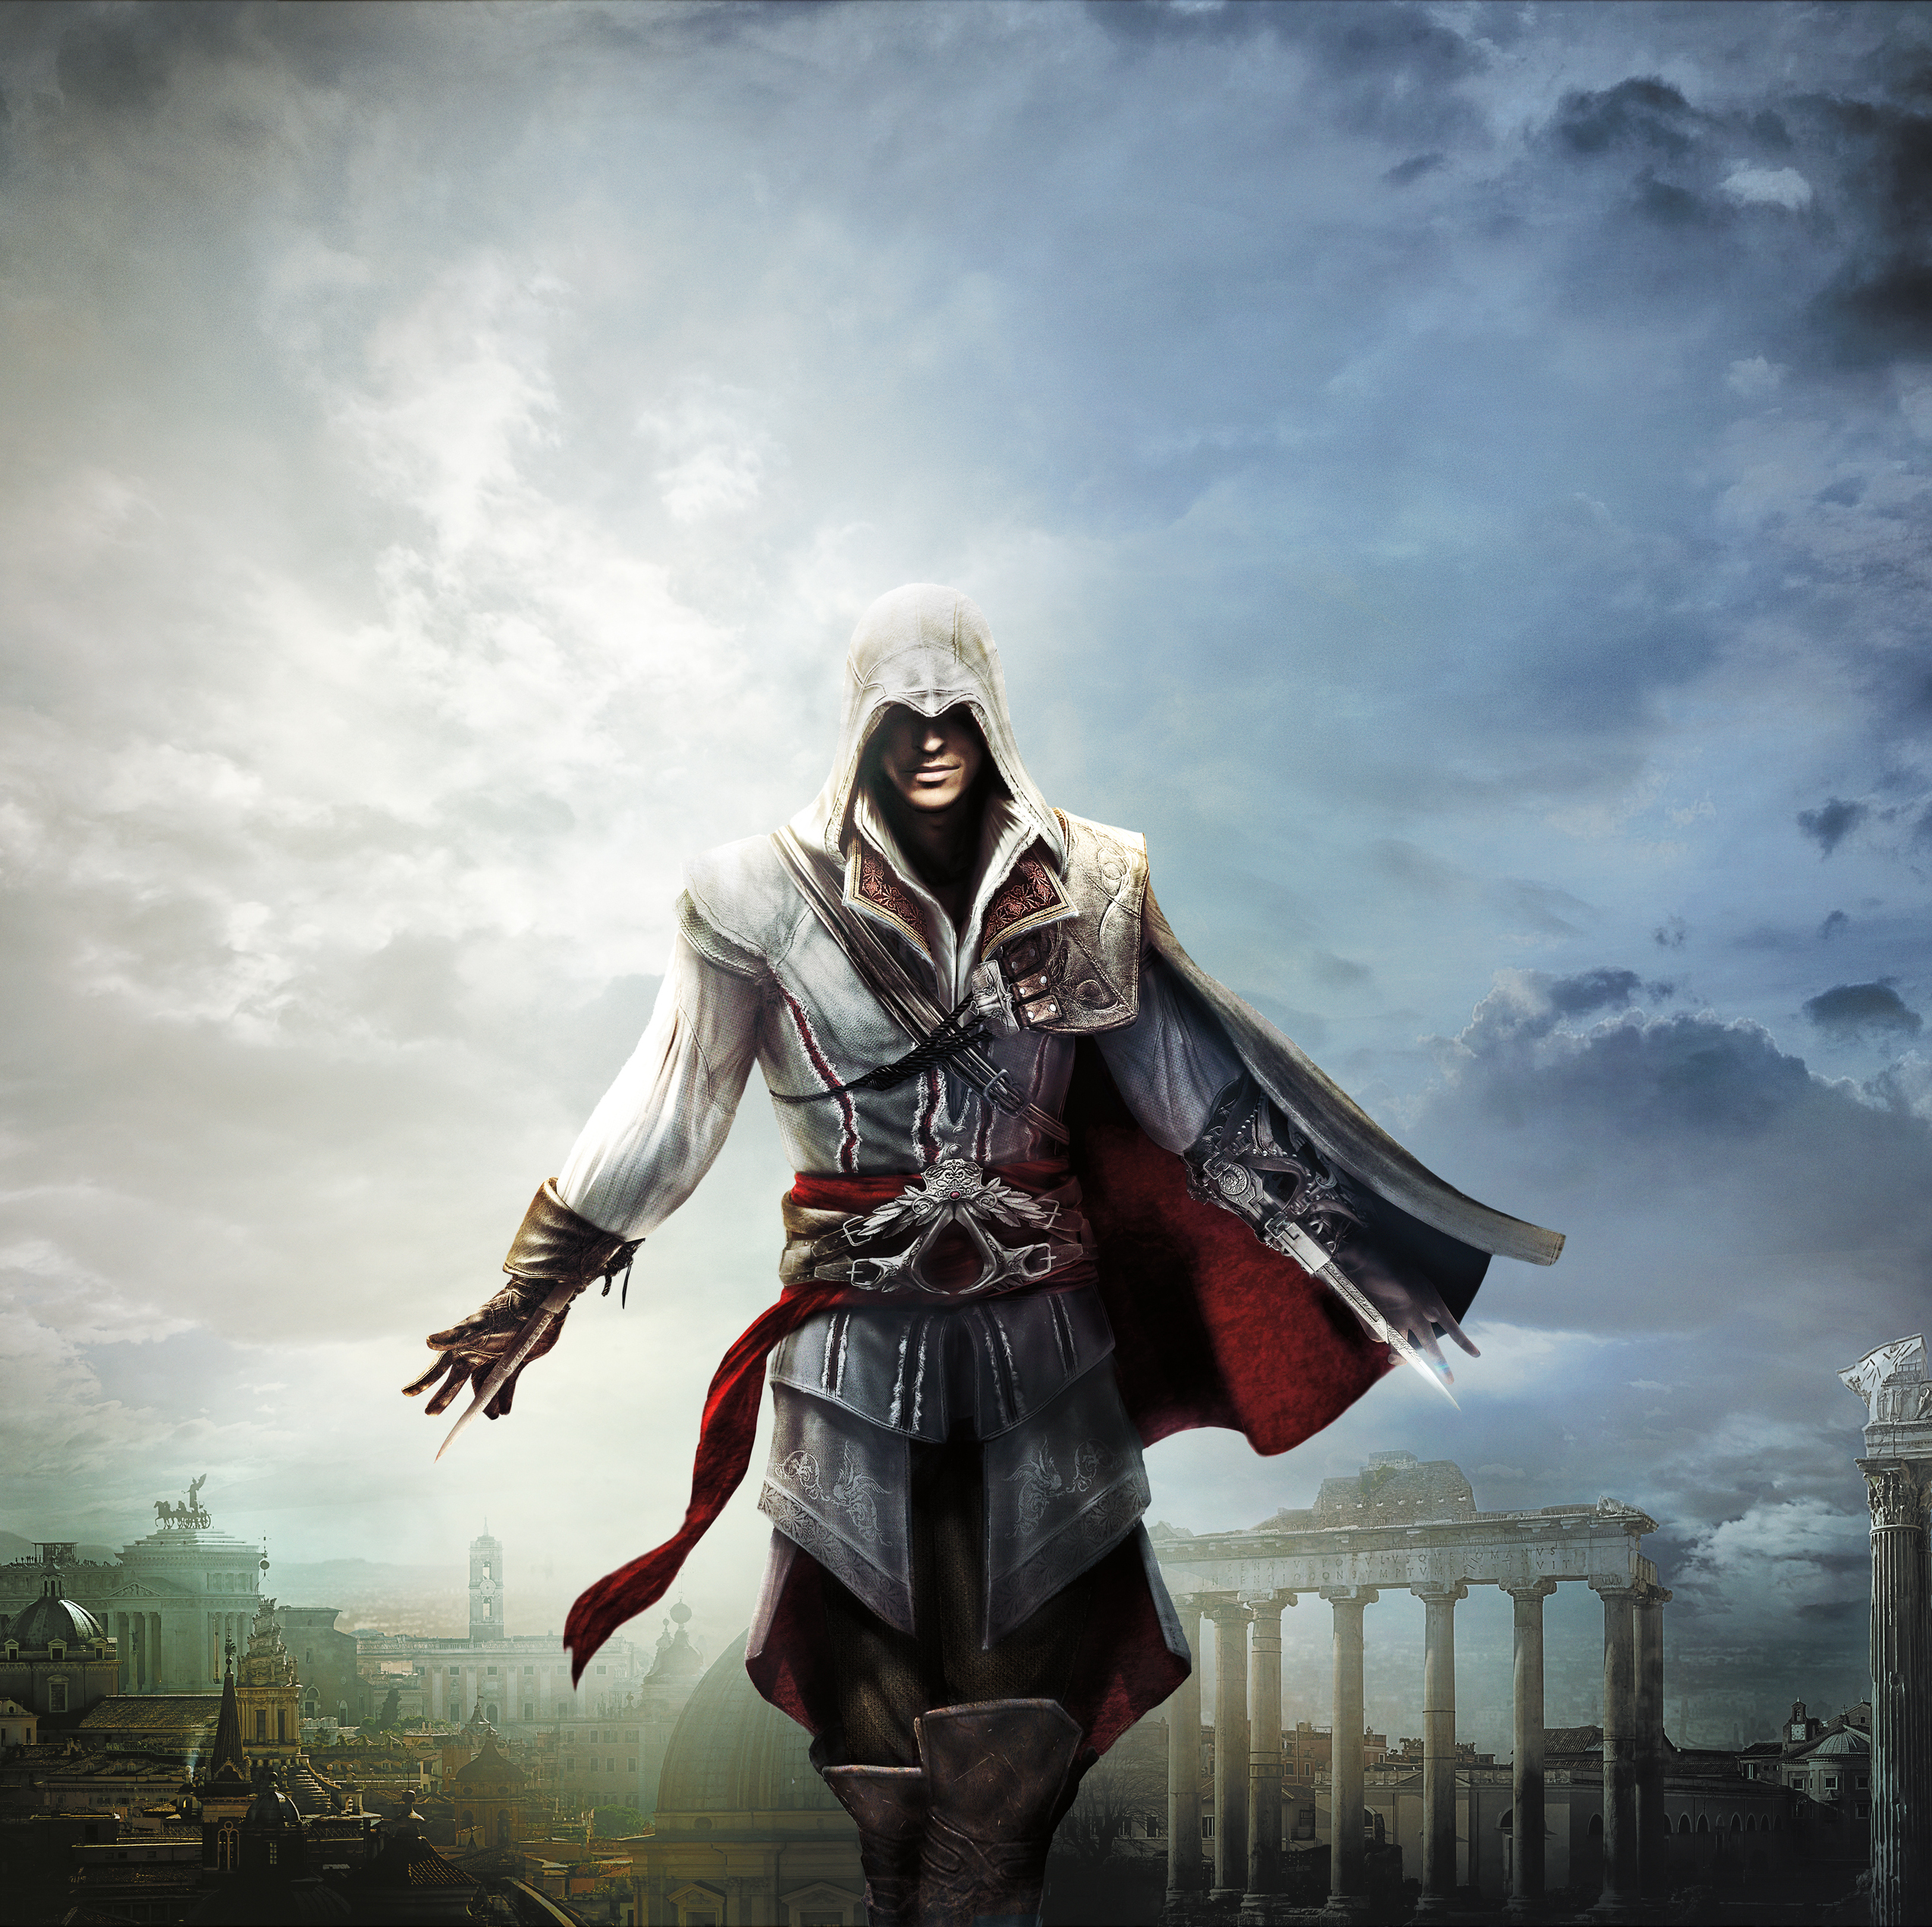 Ассасин крид магазин. Assassin's Creed коллекция Эцио ps4. Assassins Creed Ezio collection ps4. Assassins Creed 2 Ezio collection. Assassins Creed Эцио Аудиторе коллекция ps4.